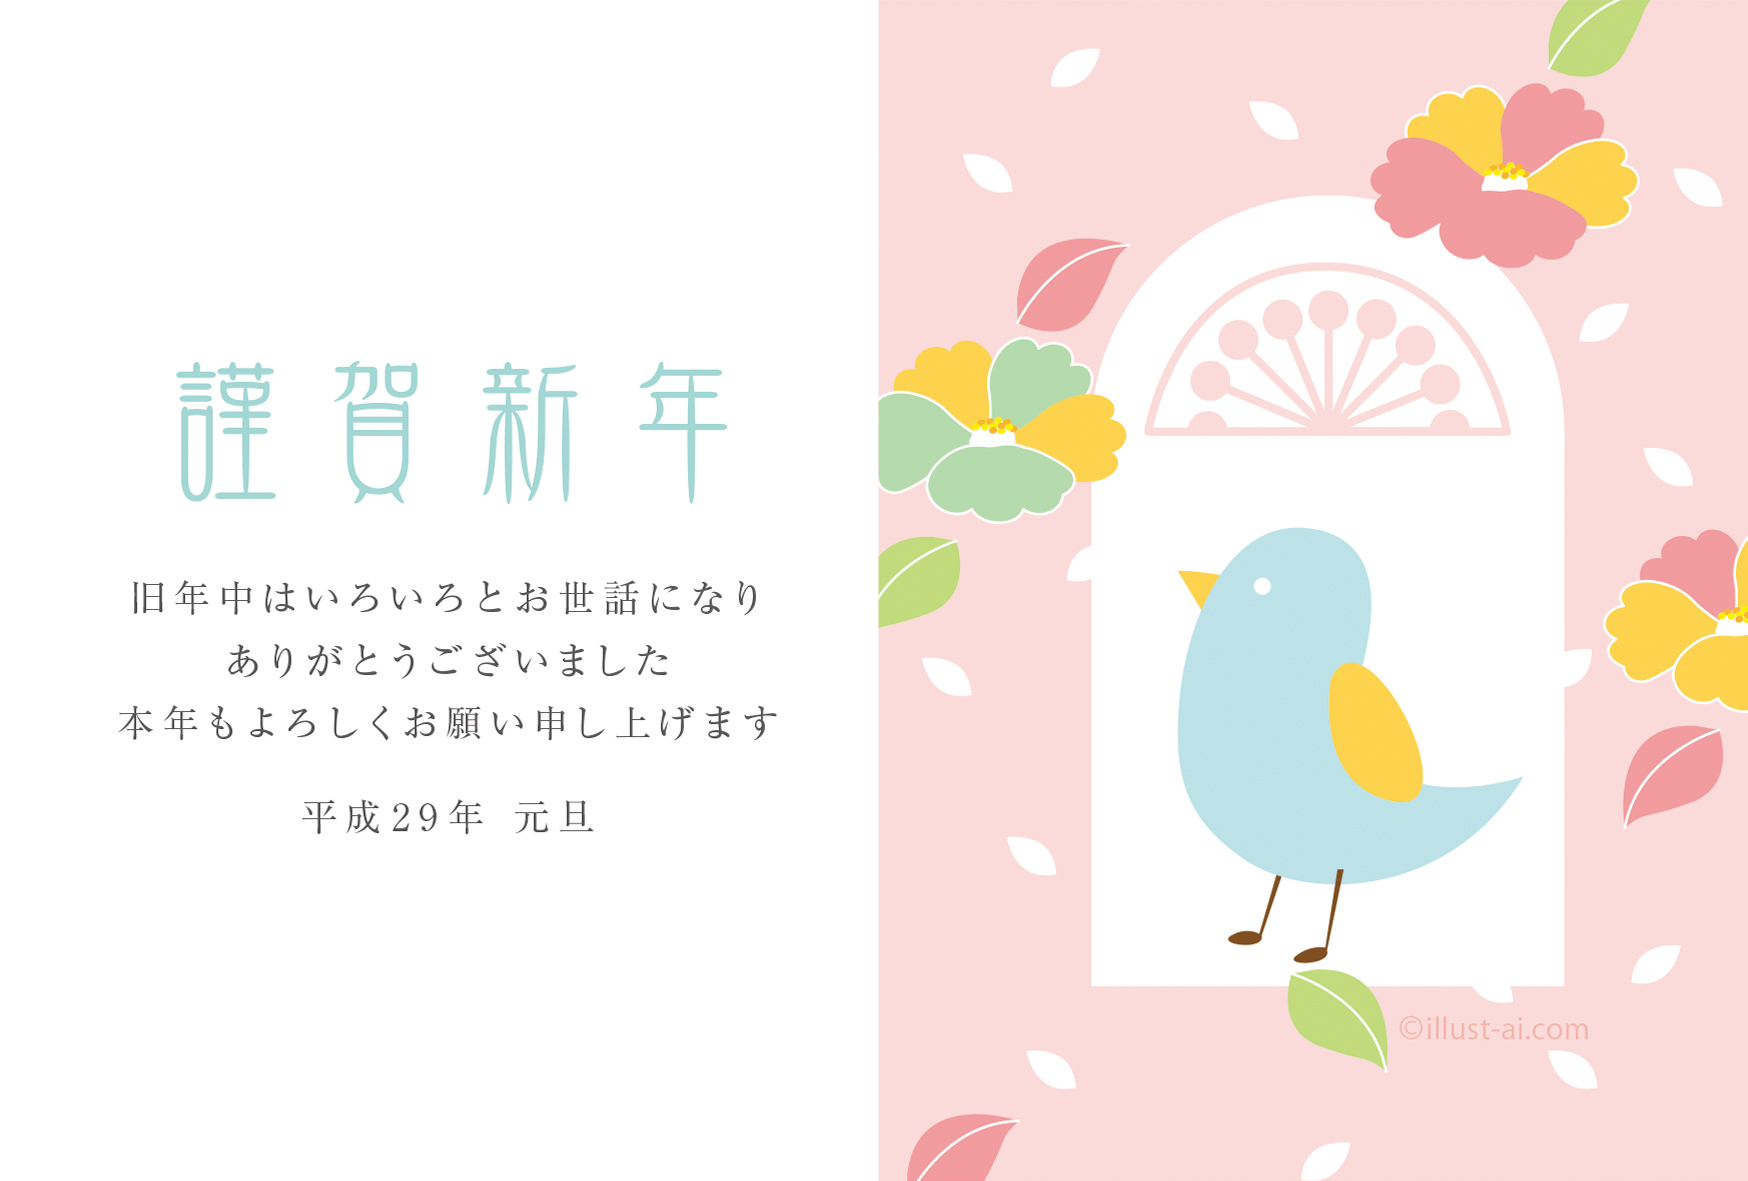 小鳥と椿のイラストがほっこりレトロなデザイン 年賀状17無料イラスト素材集